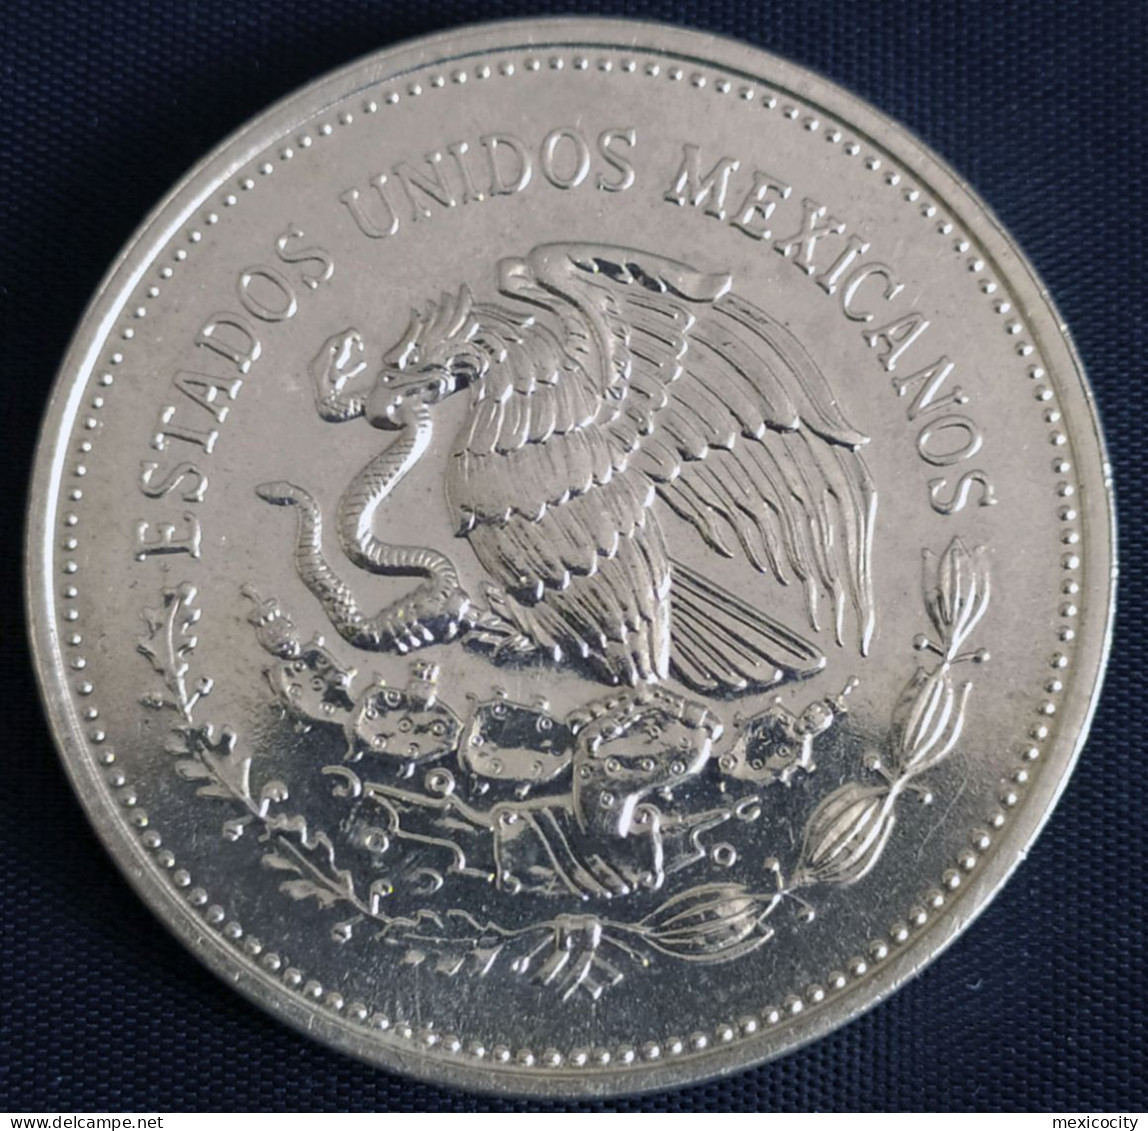 MEXICO 1985 $100 WORLD SOCCER CUP Mexico 86 .720 Series Silver Coin, Nice, Bargain Priced, Original Shine - Mexico